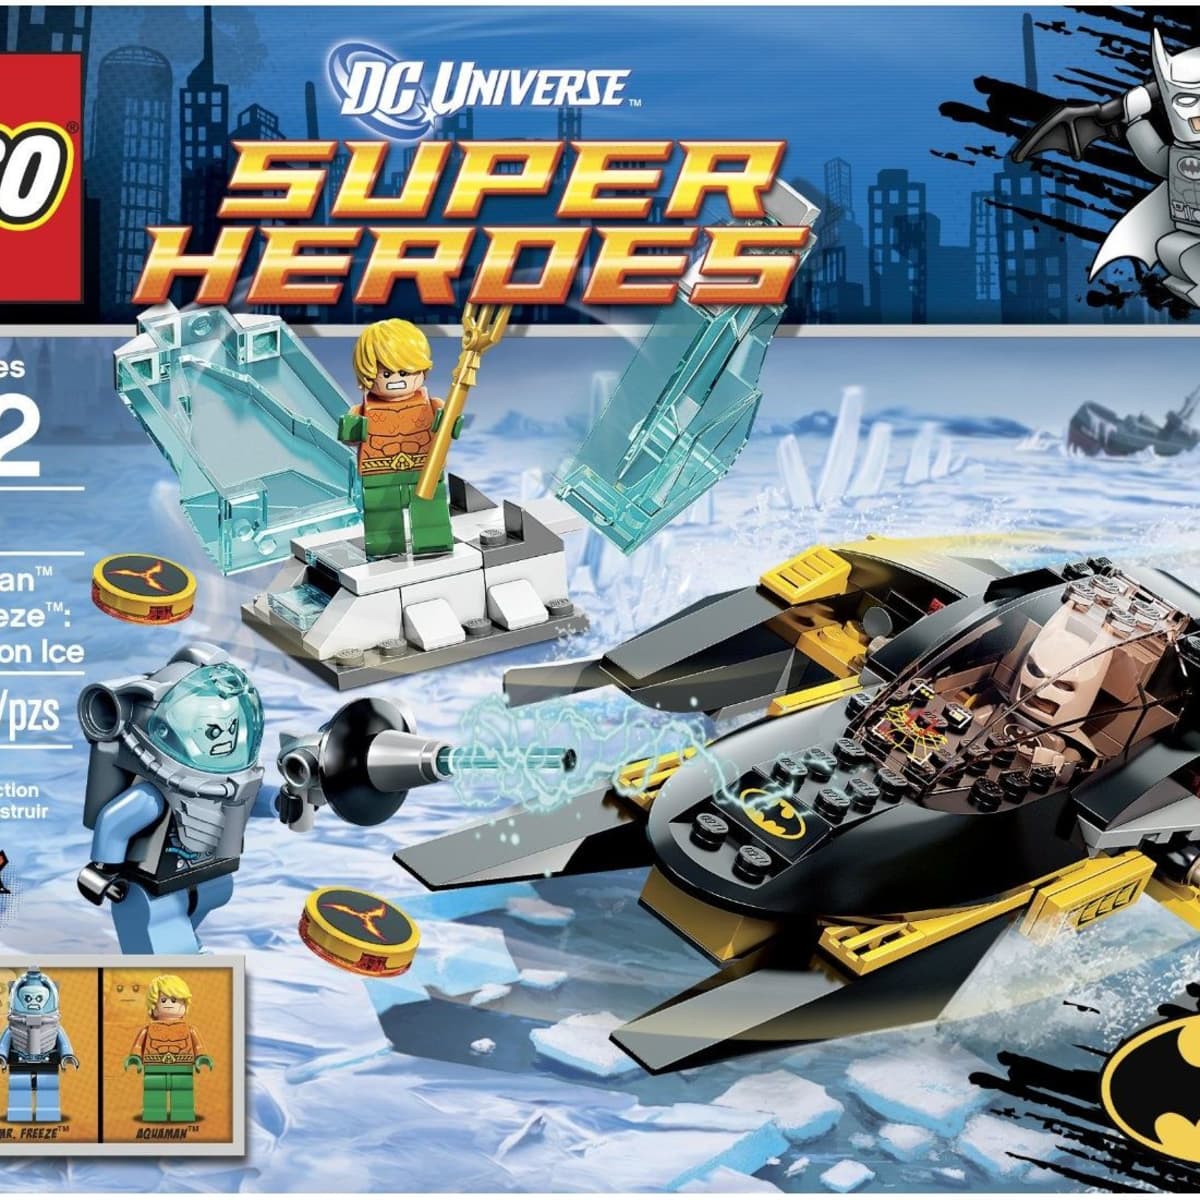 Lot 2 LEGO Marvel Super Heroes Iron Man 3 Mark 42 Armor Tony Stark 76006  76007 T